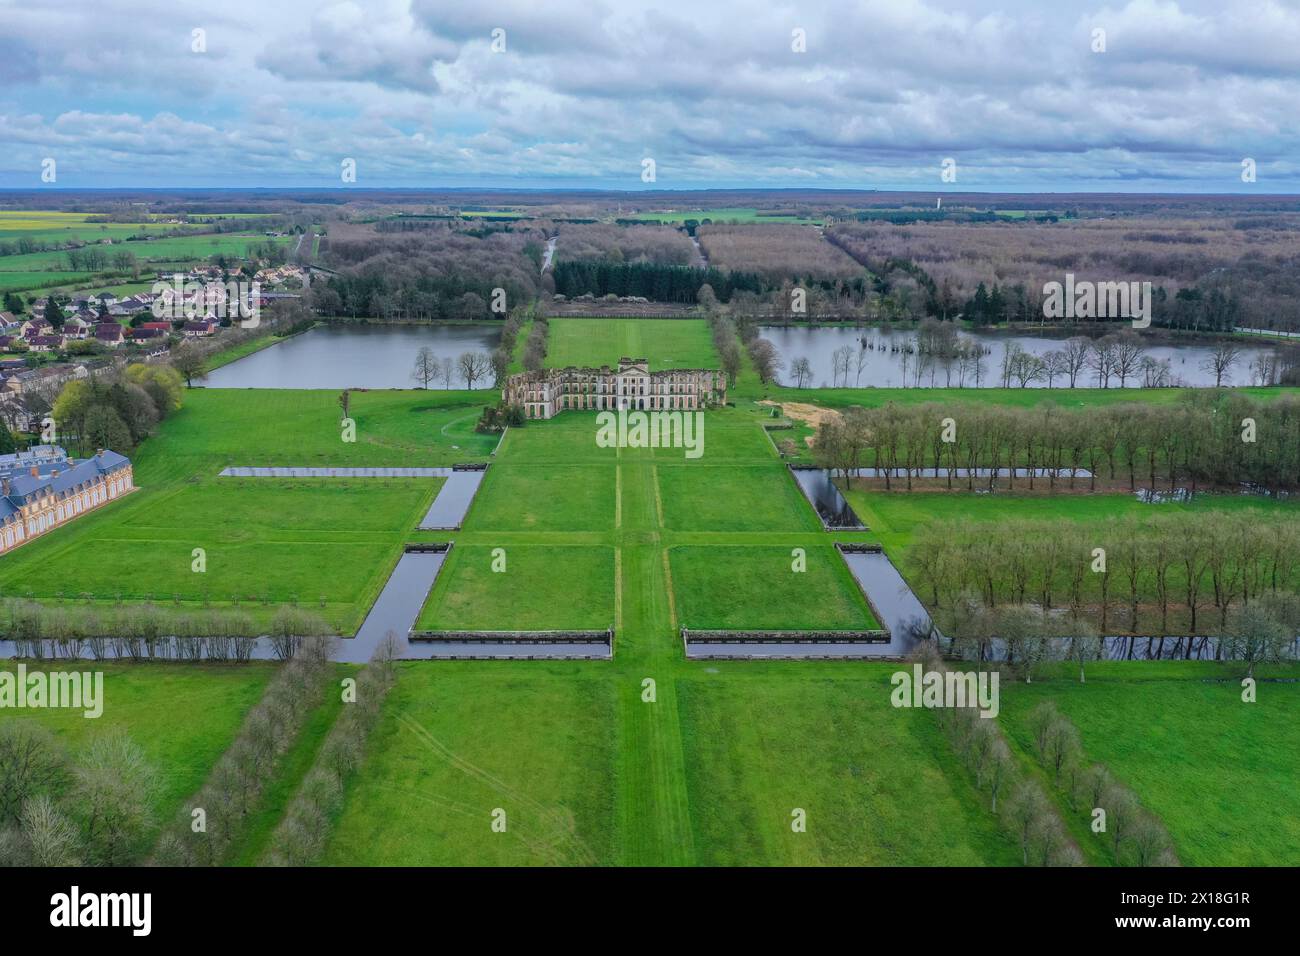 Vista aerea del parco del castello e delle rovine del castello di Ferte-Vidame, dipartimento di Eure-et-Loir, regione del centro-Val de Loire, Francia Foto Stock